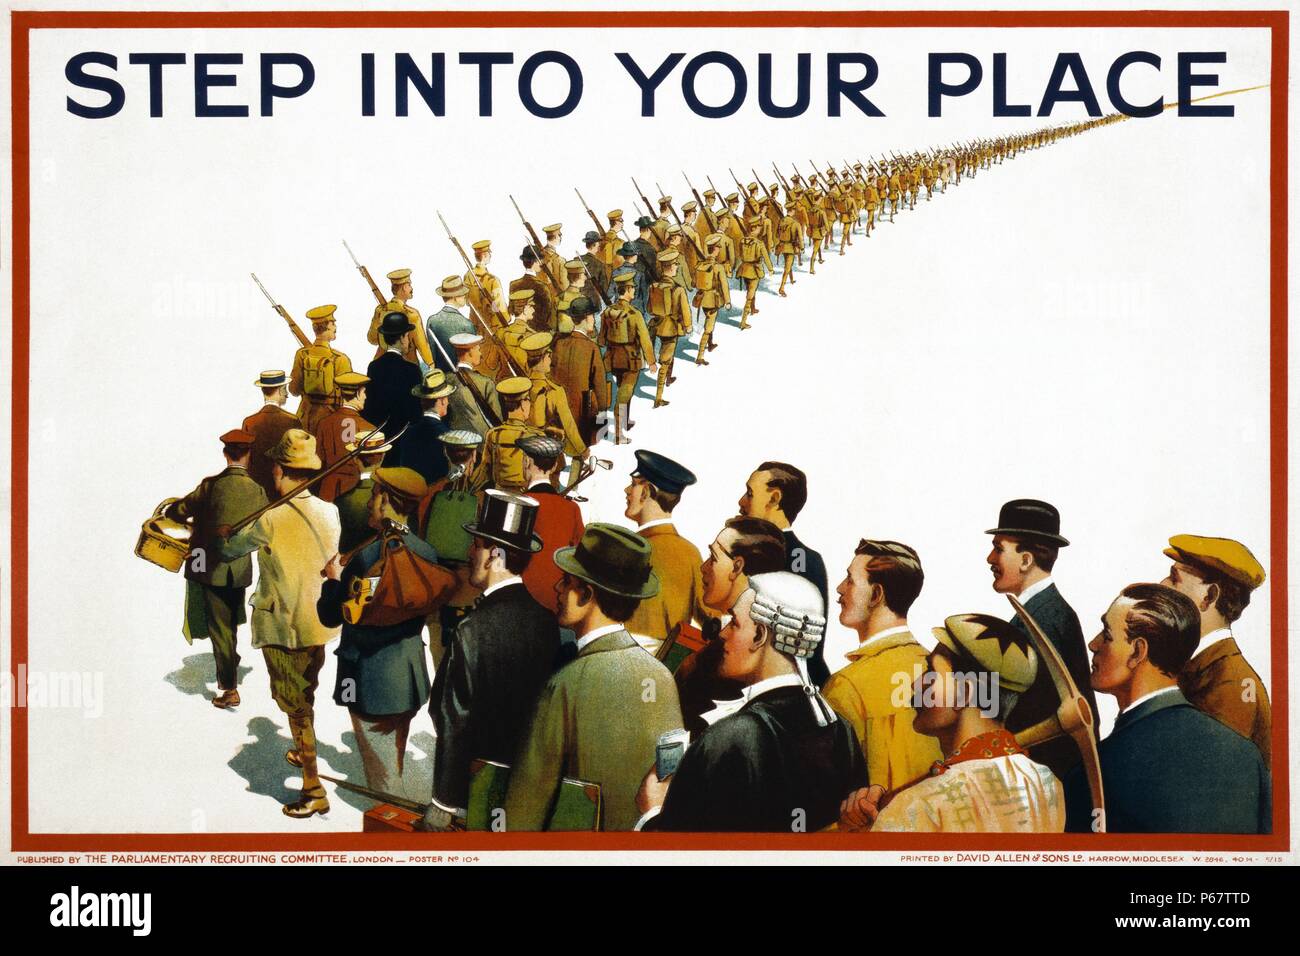 Affiches de propagande de l'anglais à partir de la Première Guerre mondiale montrant une colonne de soldats et de civils marchant à la guerre. Le texte affiché est l'étape à votre place". Banque D'Images